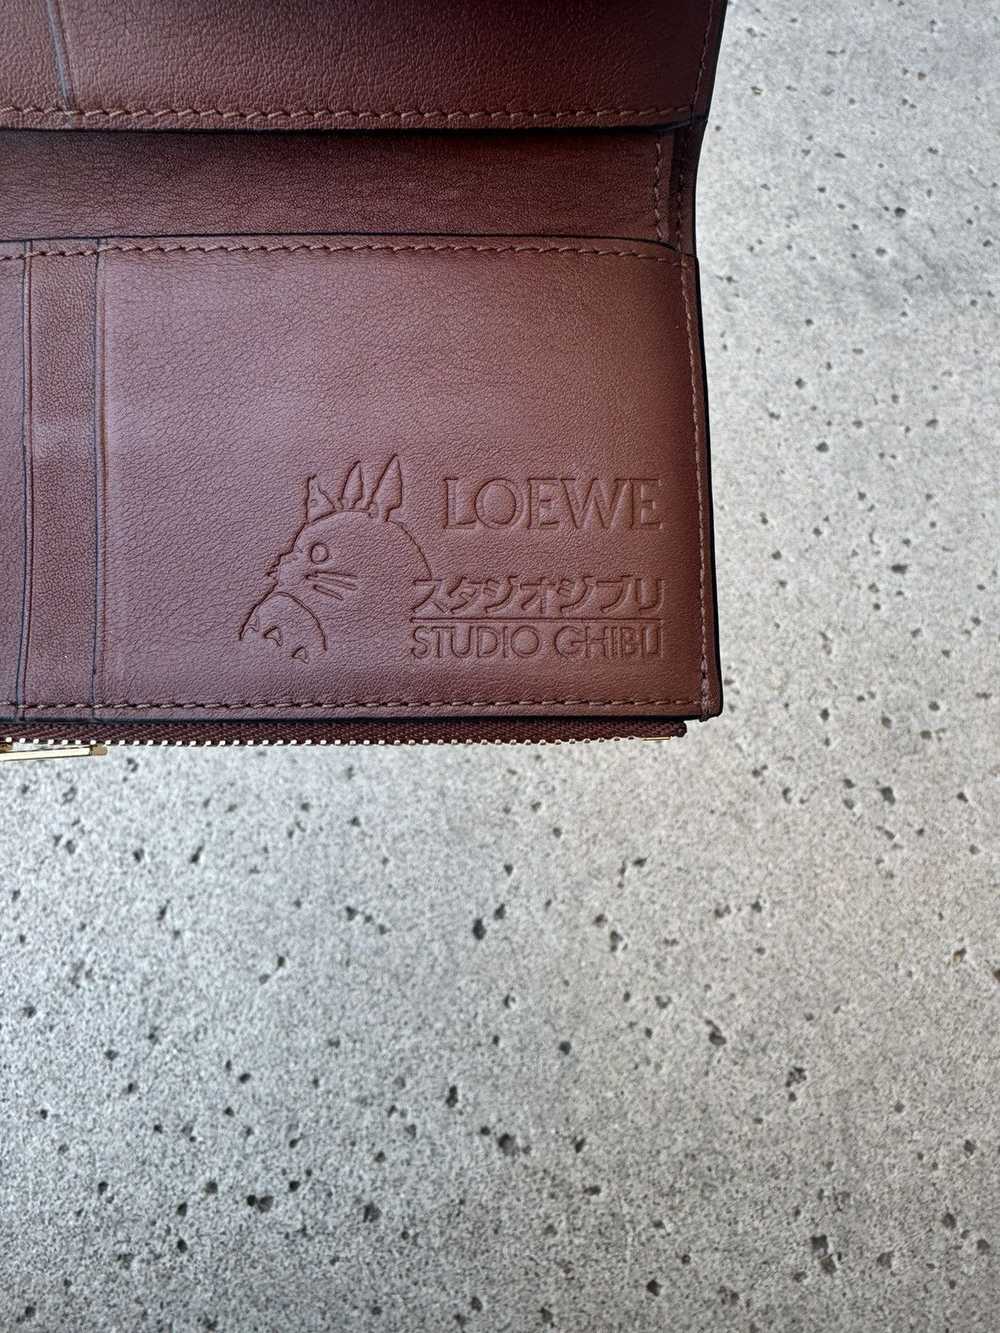 Loewe Loewe X Studio Ghibli Spirited Away Wallet - image 3